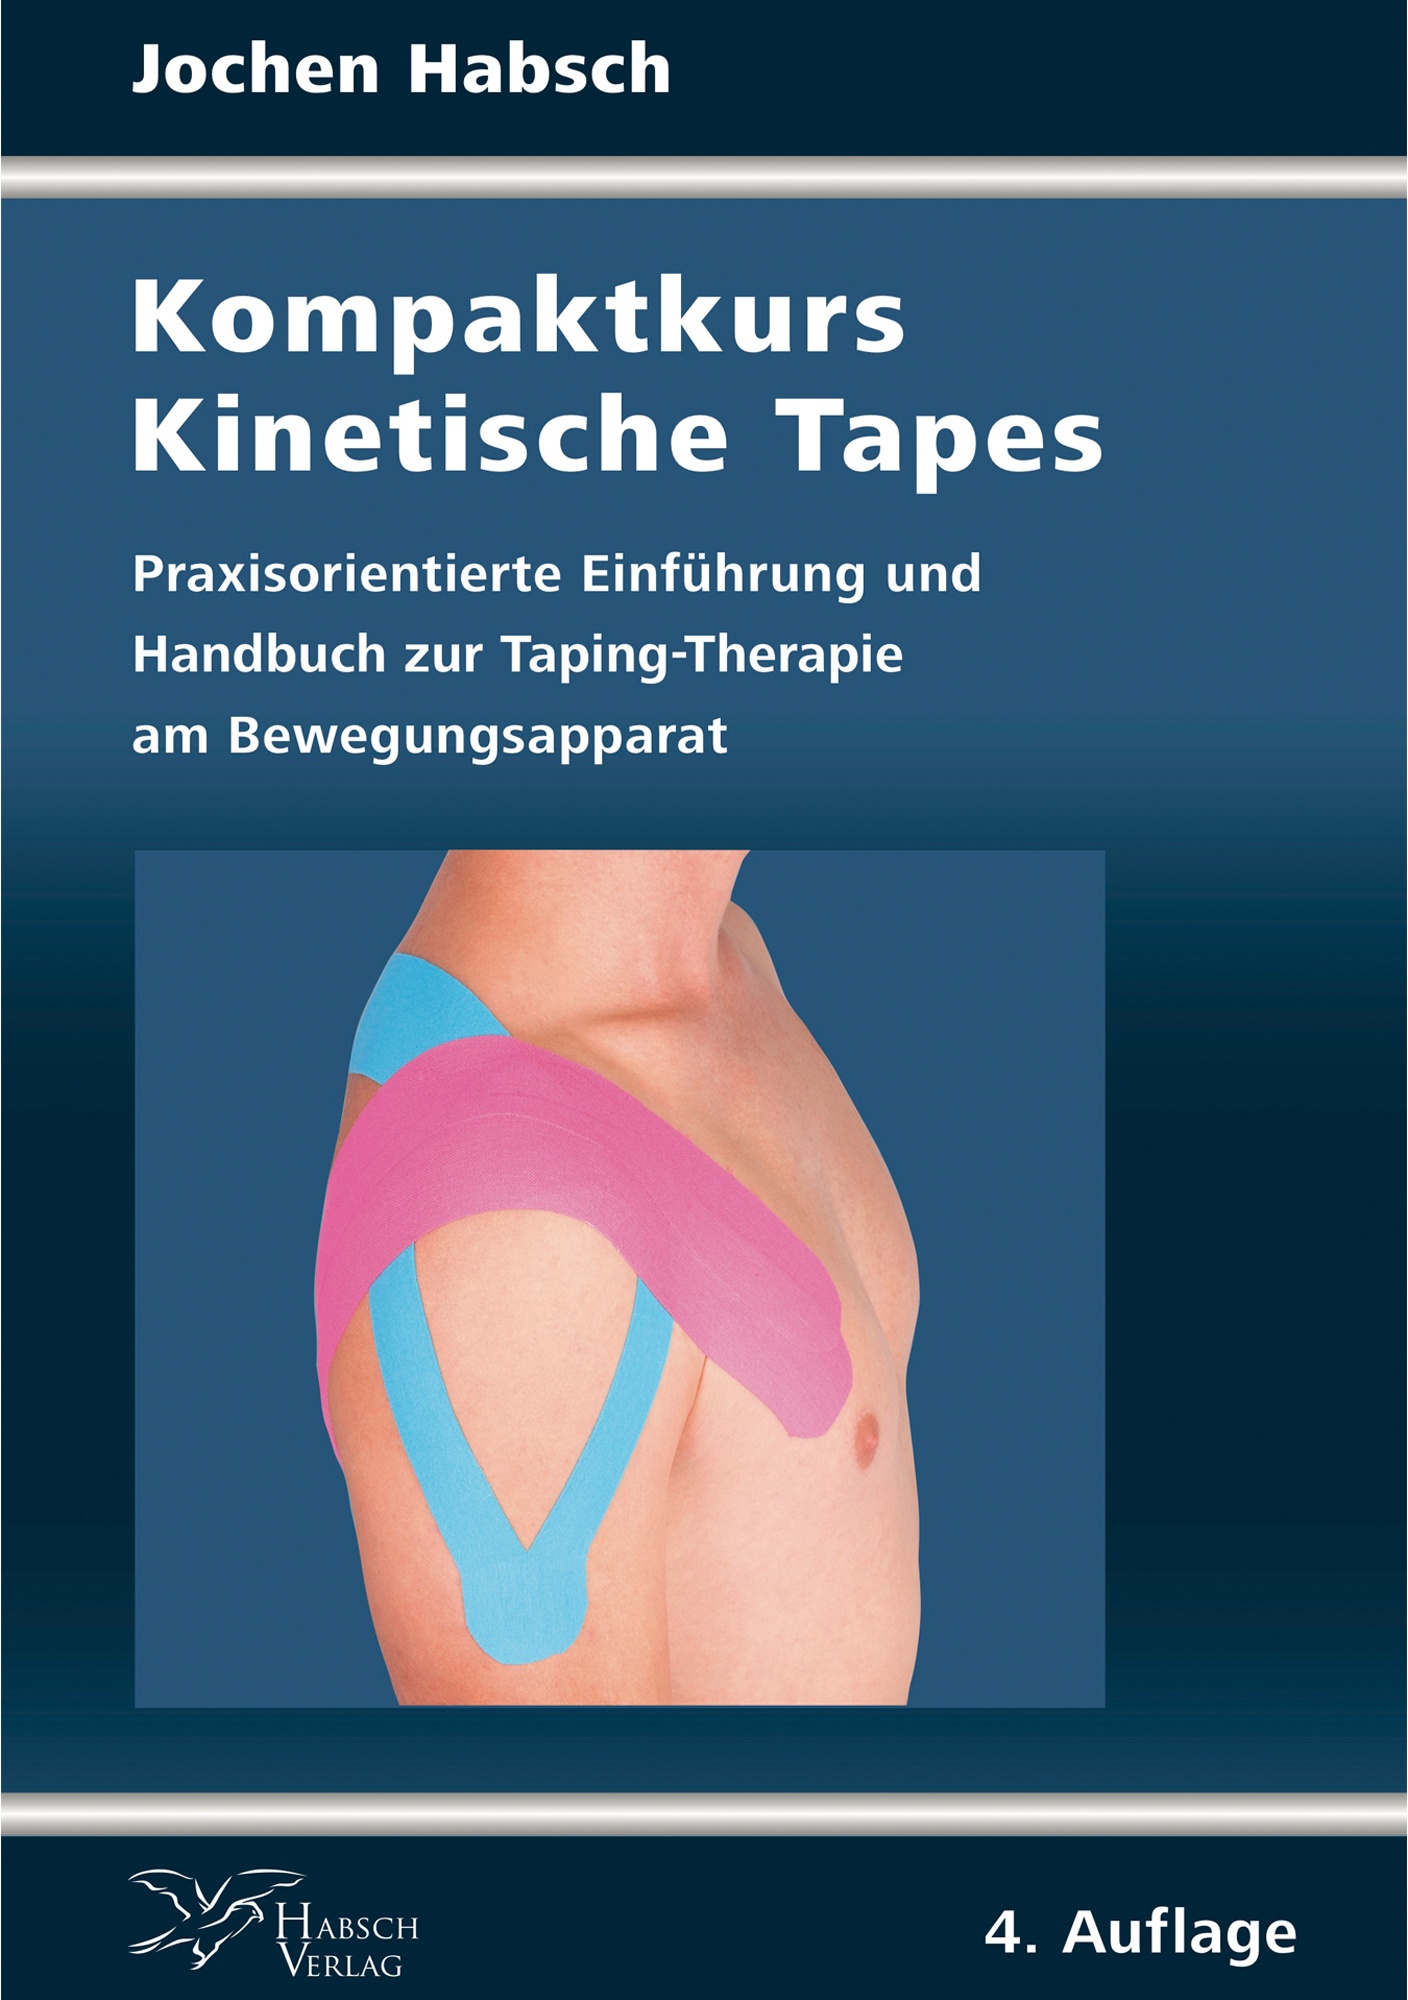 Buch Kompaktkurs Kinetische Tapes von Jochen Habsch 4. Auflage